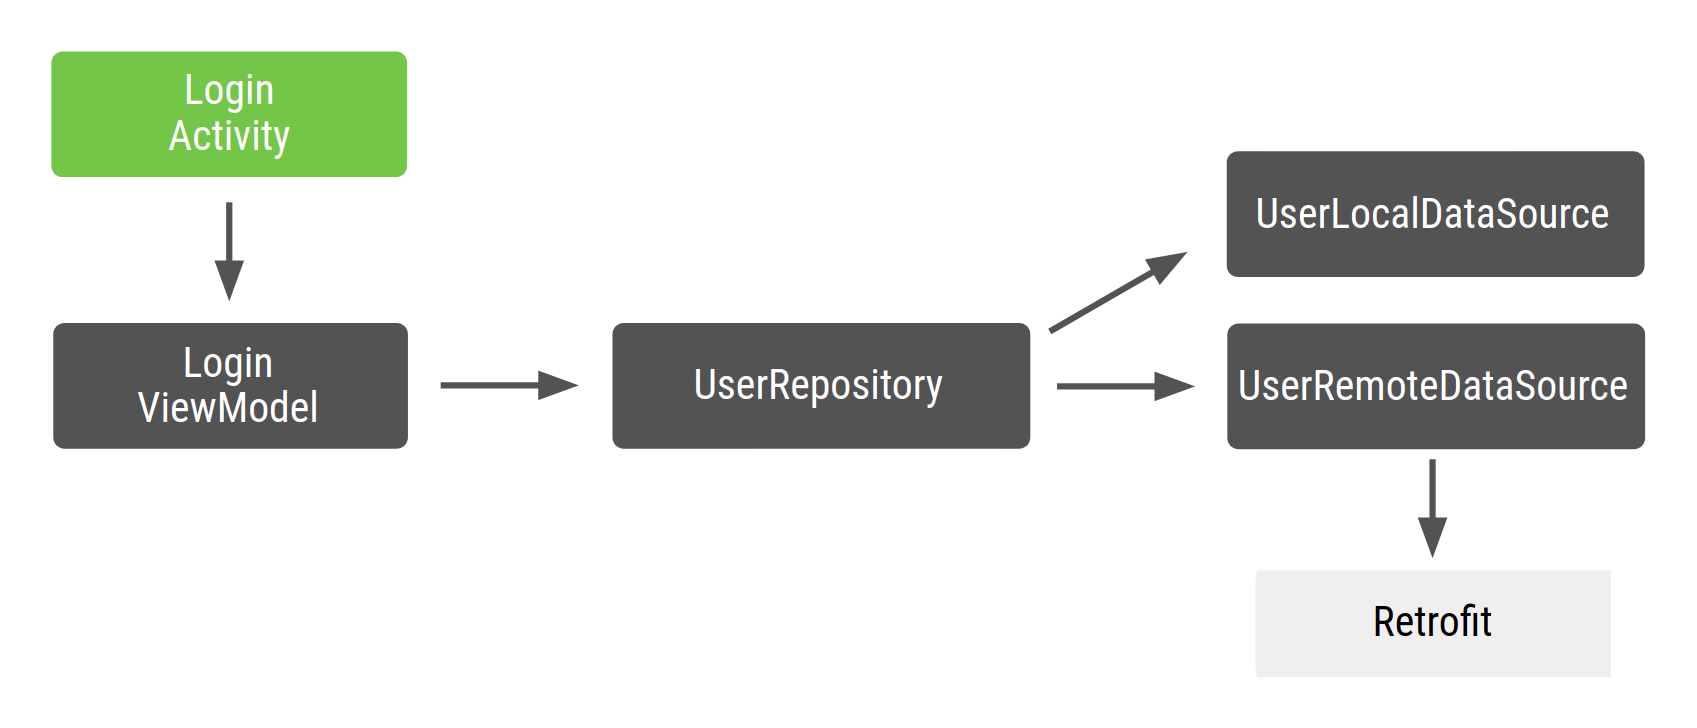 LoginActivity depende do LoginViewModel, que depende do UserRepository,
  que depende do UserLocalDataSource e do UserRemoteDataSource, que, por sua vez,
  depende do Retrofit.